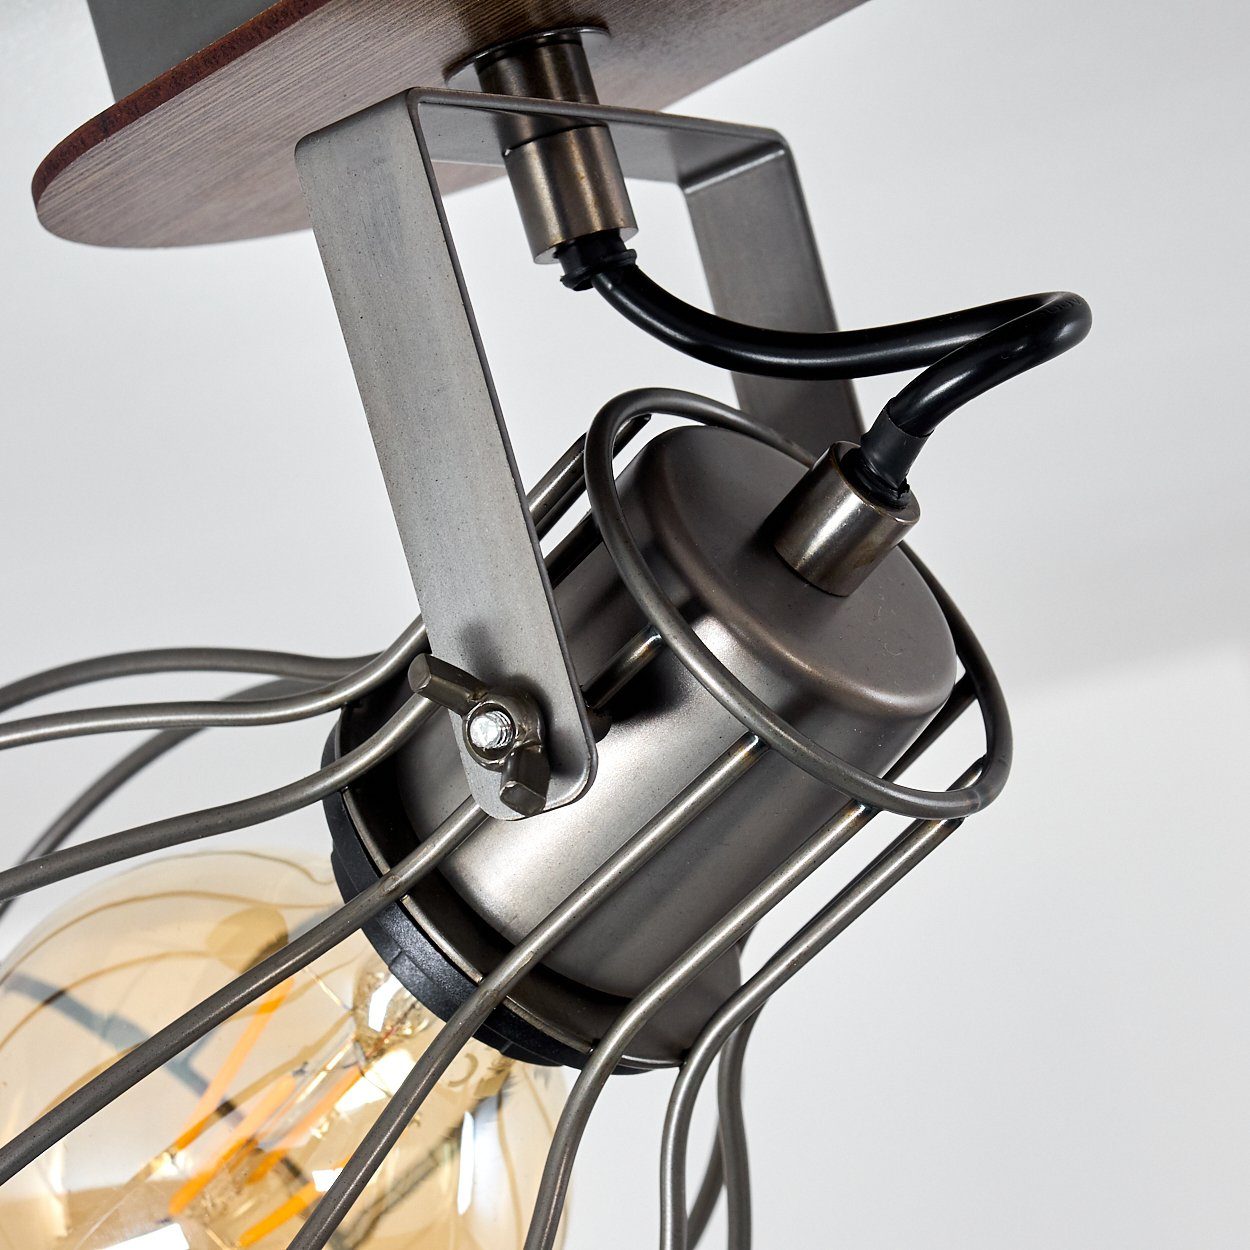 Deckenlampe Retro/Vintage Design Grau/Braun, ohne Deckenleuchte »Palù« hofstein im Metall/Holz Leuchtmittel, Spot mit verstellbaren aus 4xE27, in Strahlern,